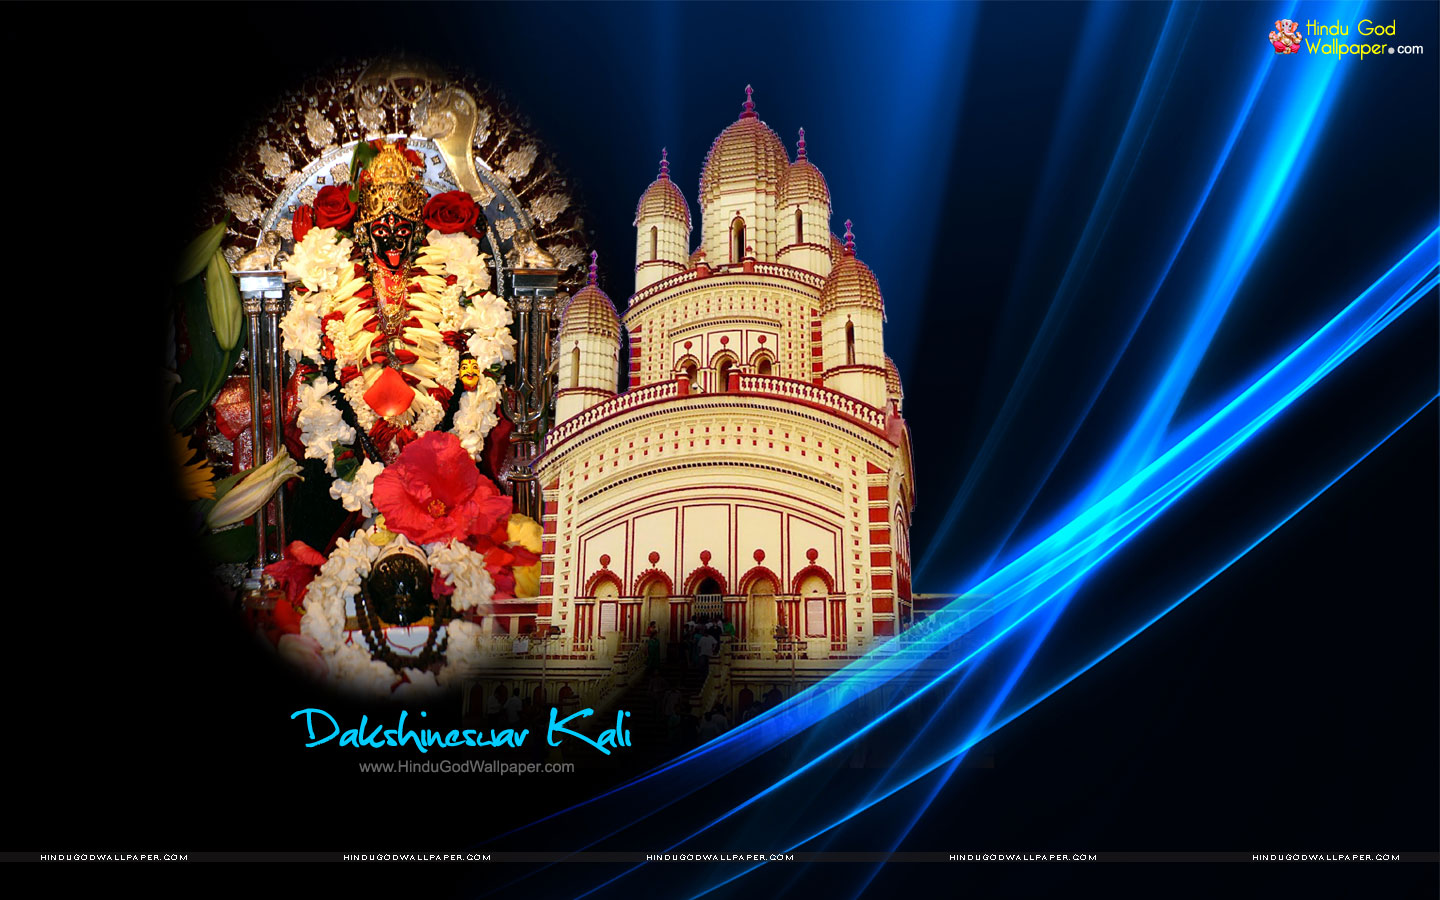 Dakshineswar Kali Wallpapers Free Download